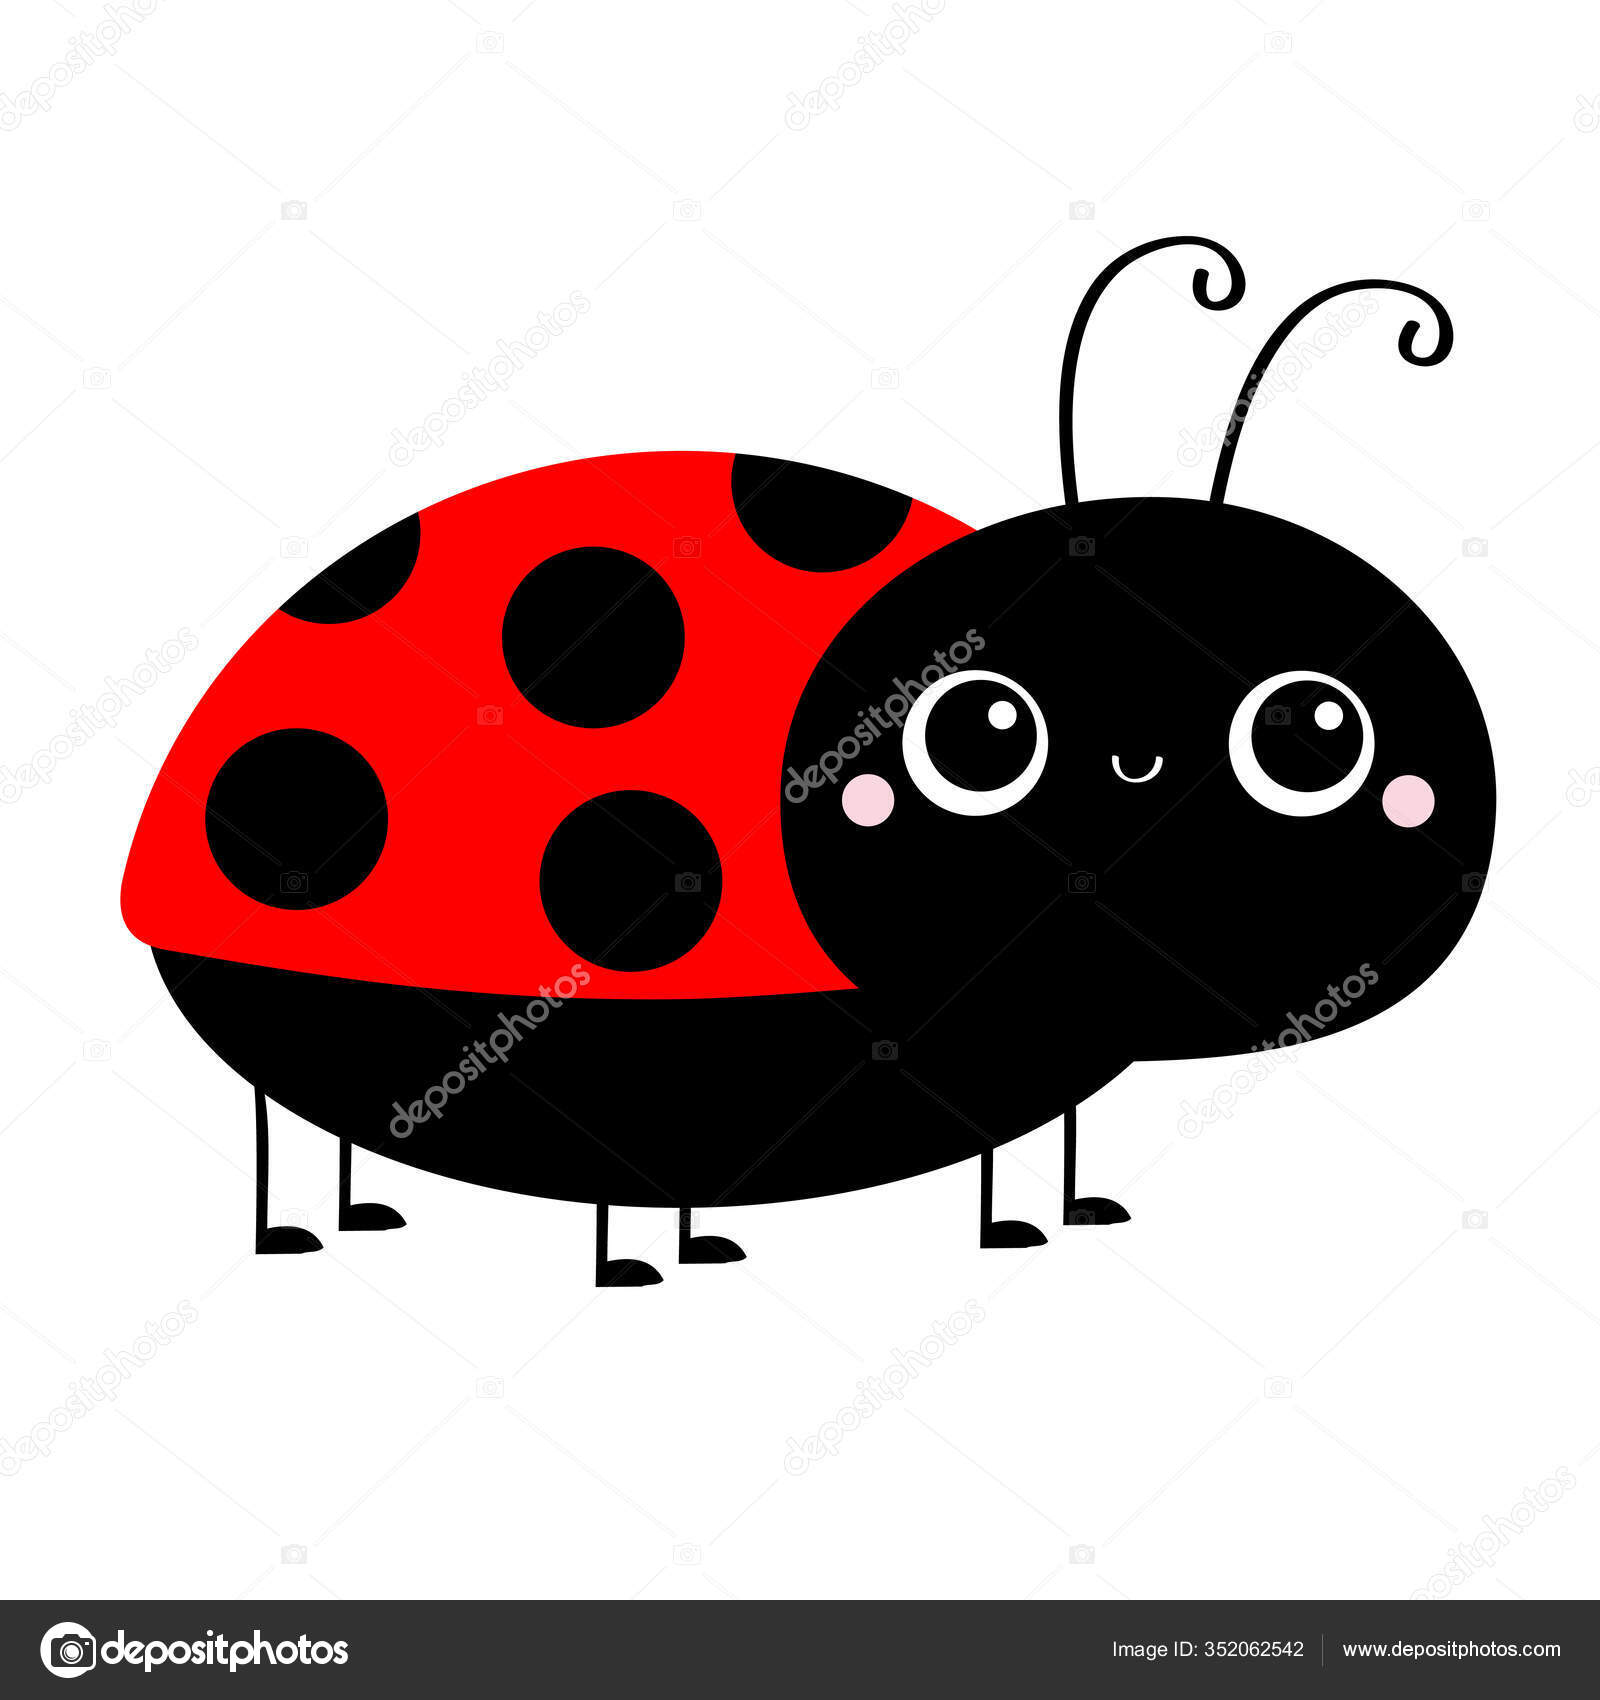 Pintar O Jogo De Simetria Da Ladybug Dos Pontos Foto de Stock - Ilustração  de inseto, teste: 173877088